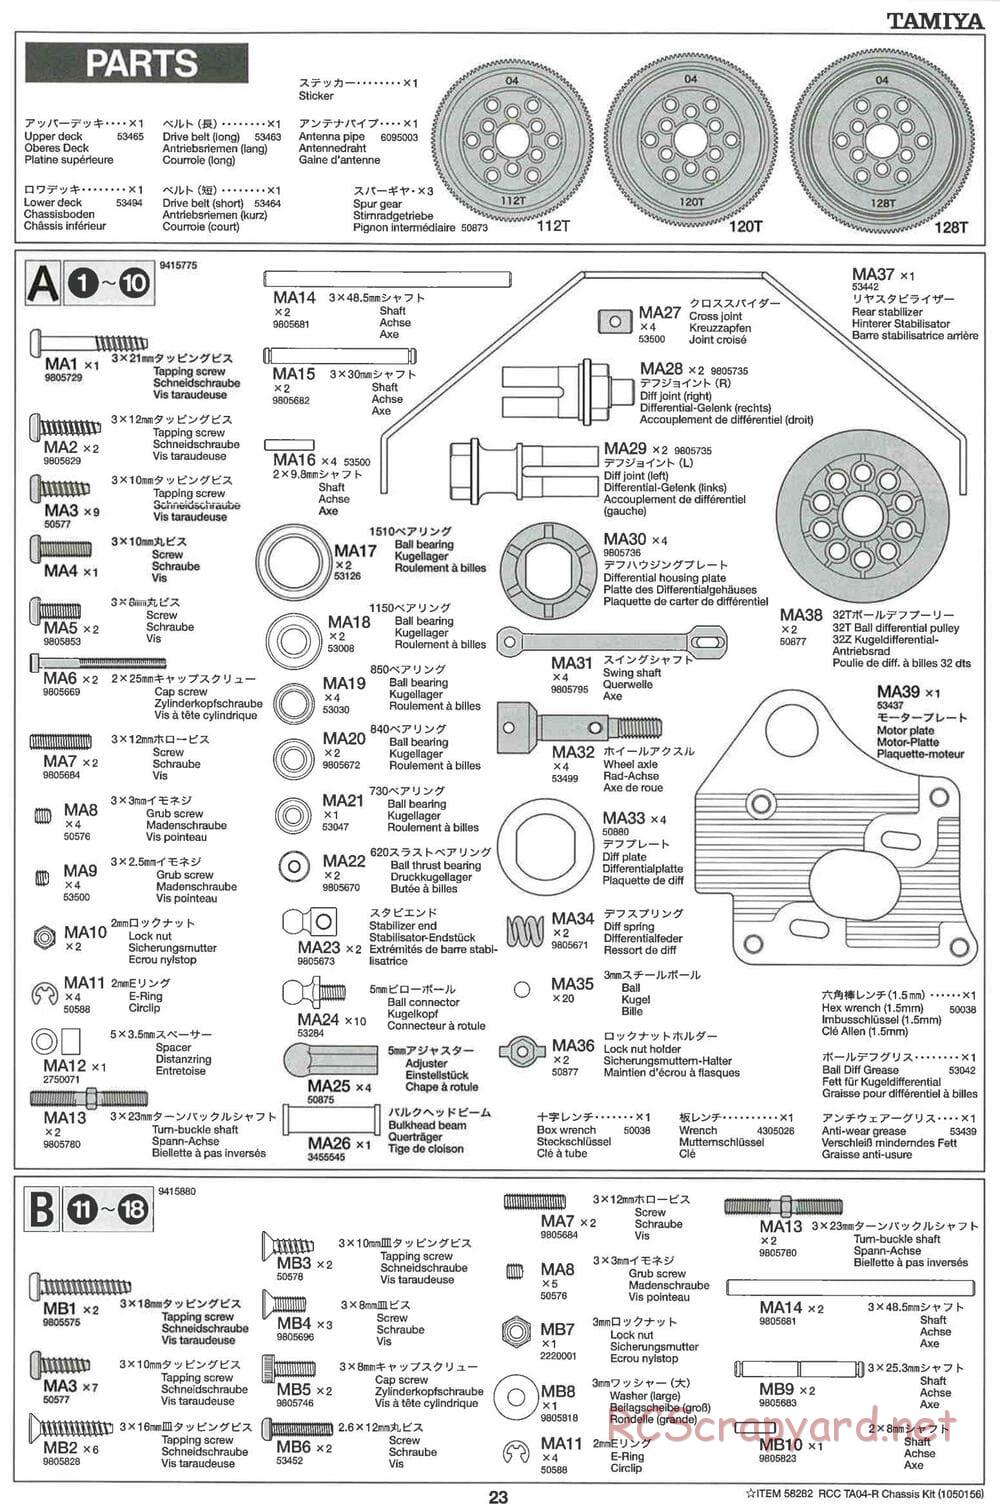 Tamiya - TA-04R Chassis - Manual - Page 23